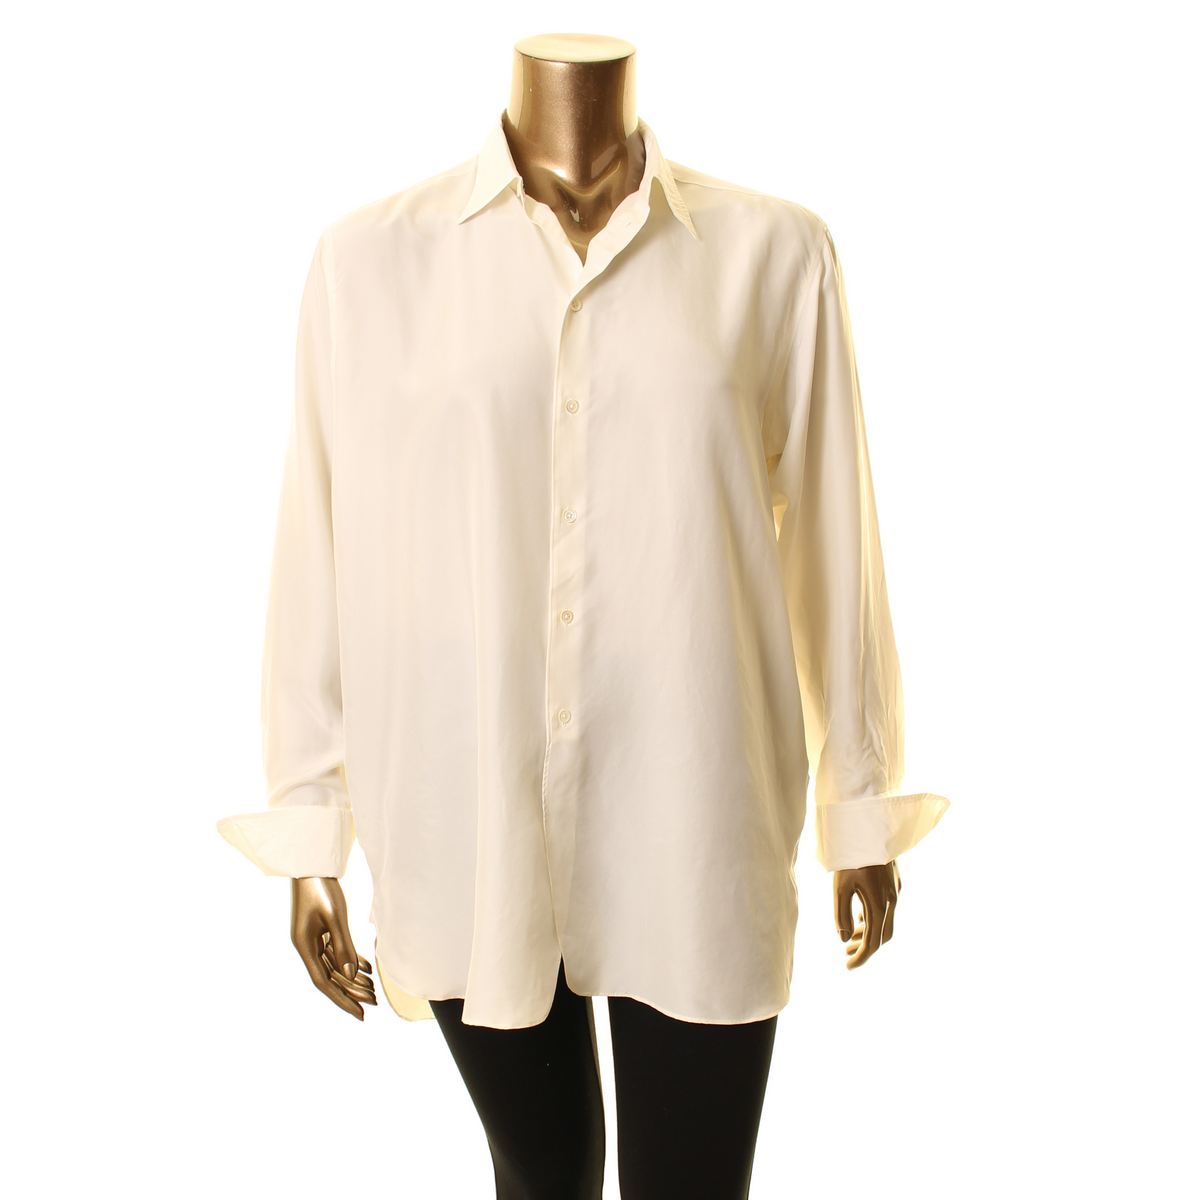 ralph lauren white button down shirt women's